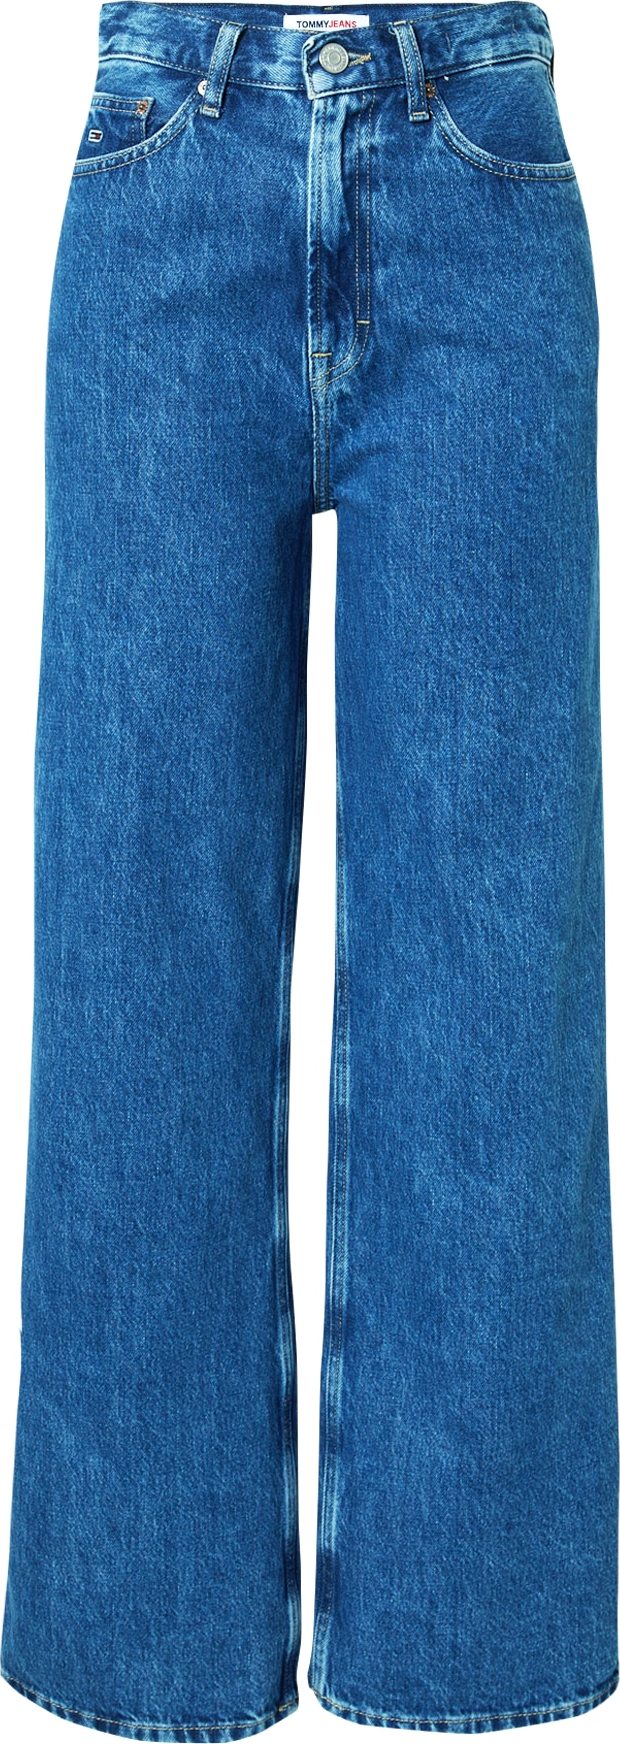 Džíny 'CLAIRE' Tommy Jeans modrá džínovina